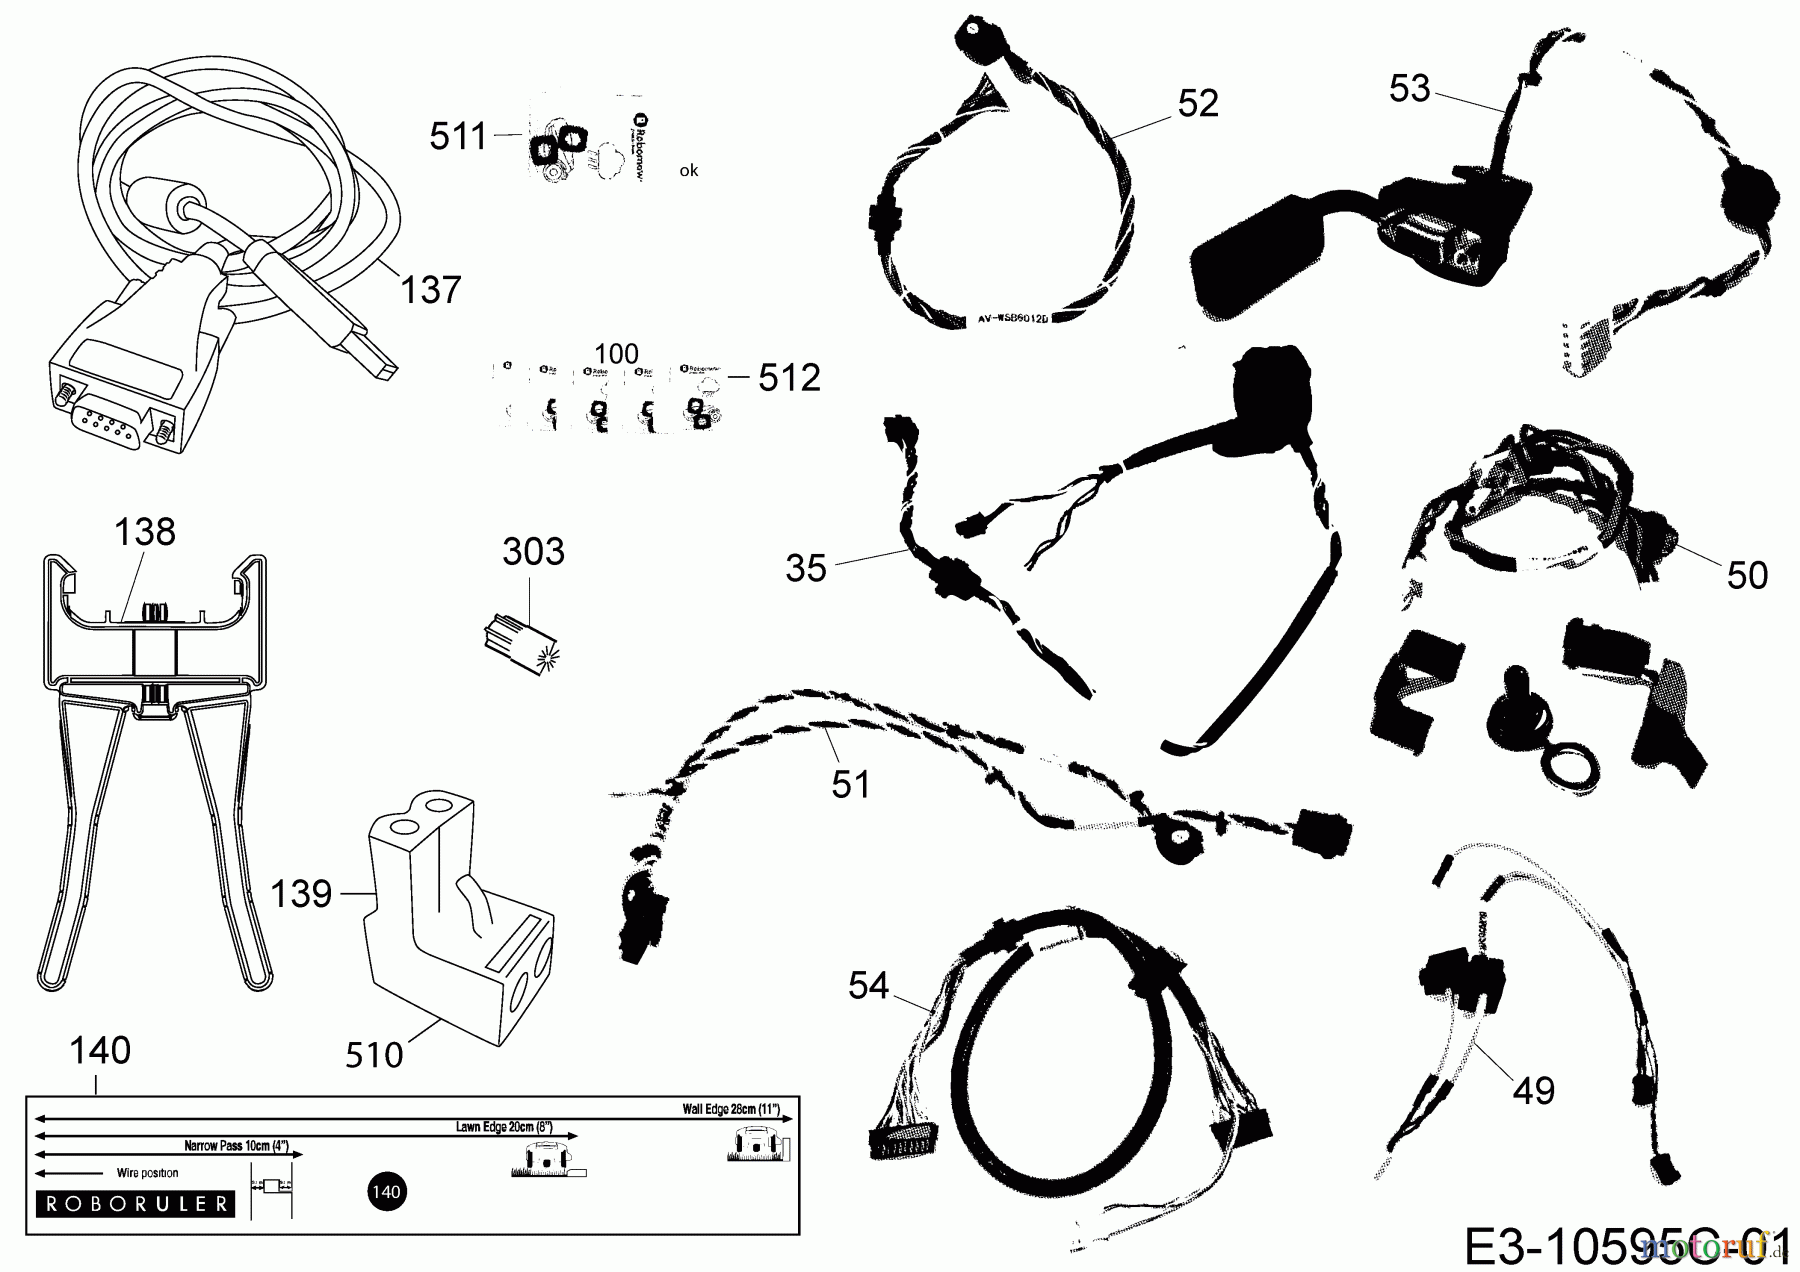  Robomow Mähroboter MS 1800 (White) PRD6200YW2  (2015) Kabel, Kabelanschluß, Regensensor, Werkzeug